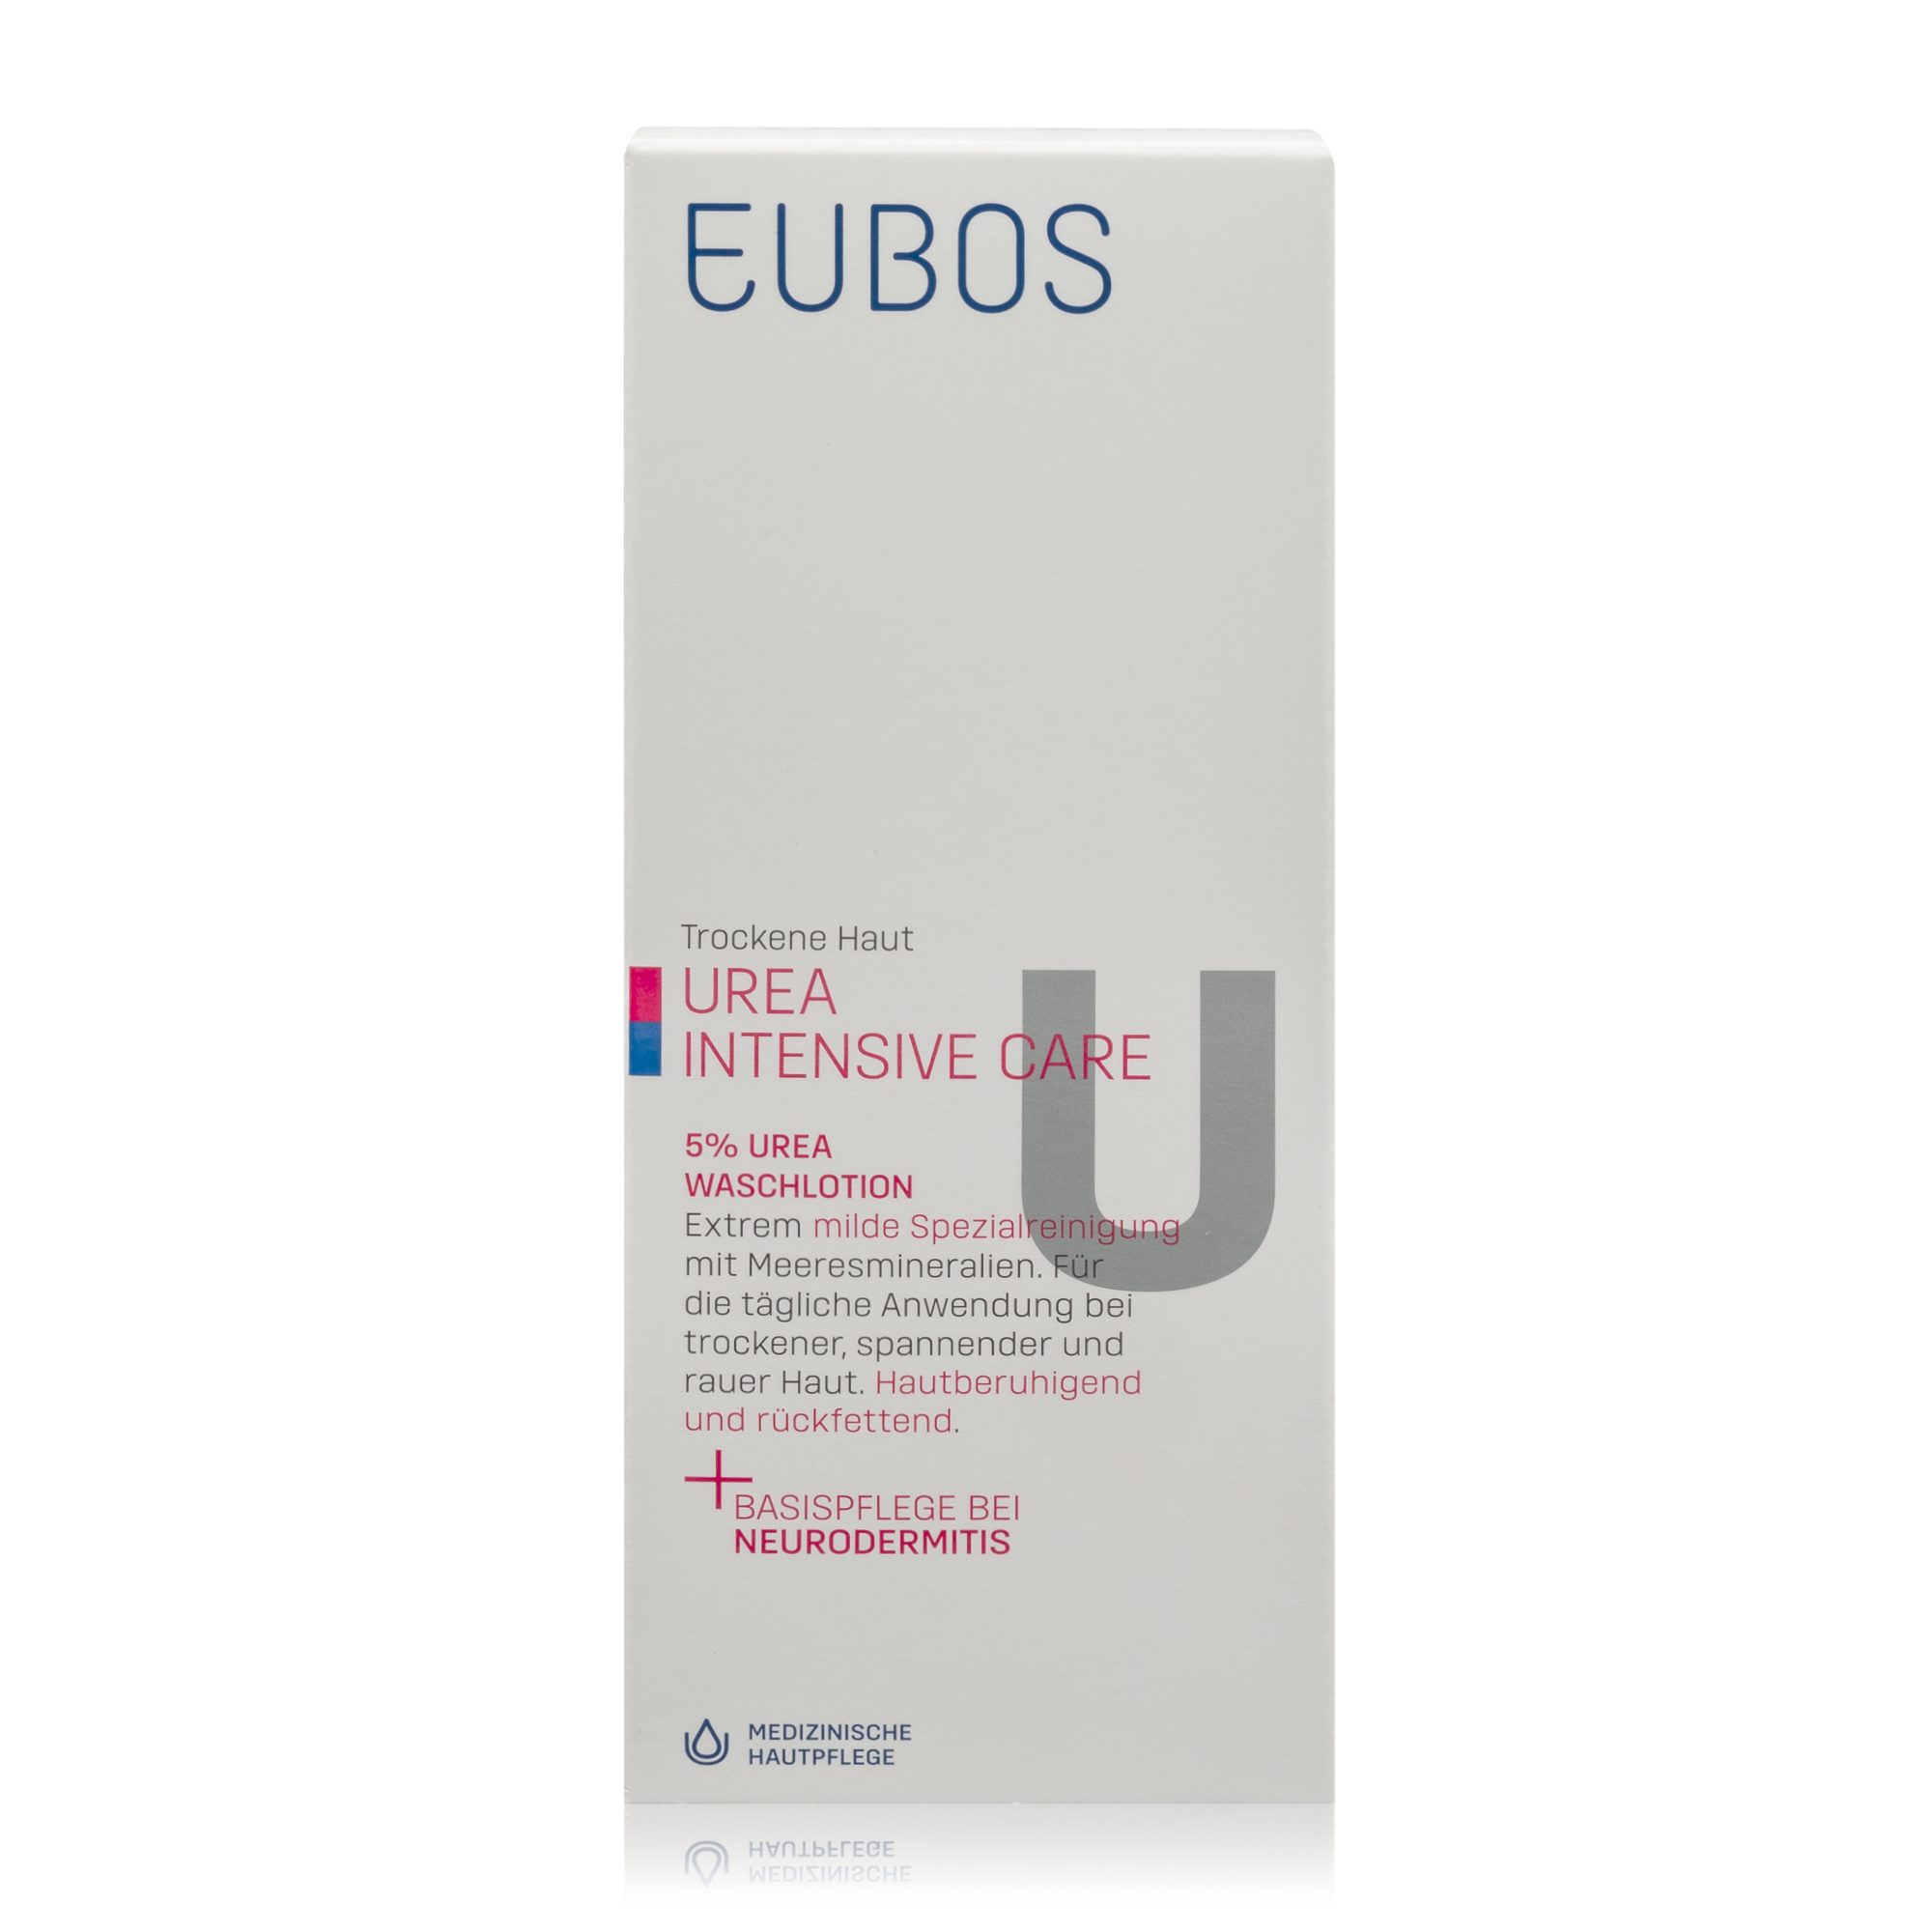 EUBOS Hautreinigungs-Set Eubos Care 5% Haut Trockene (200ml) - Urea Waschlotion Intensive Urea